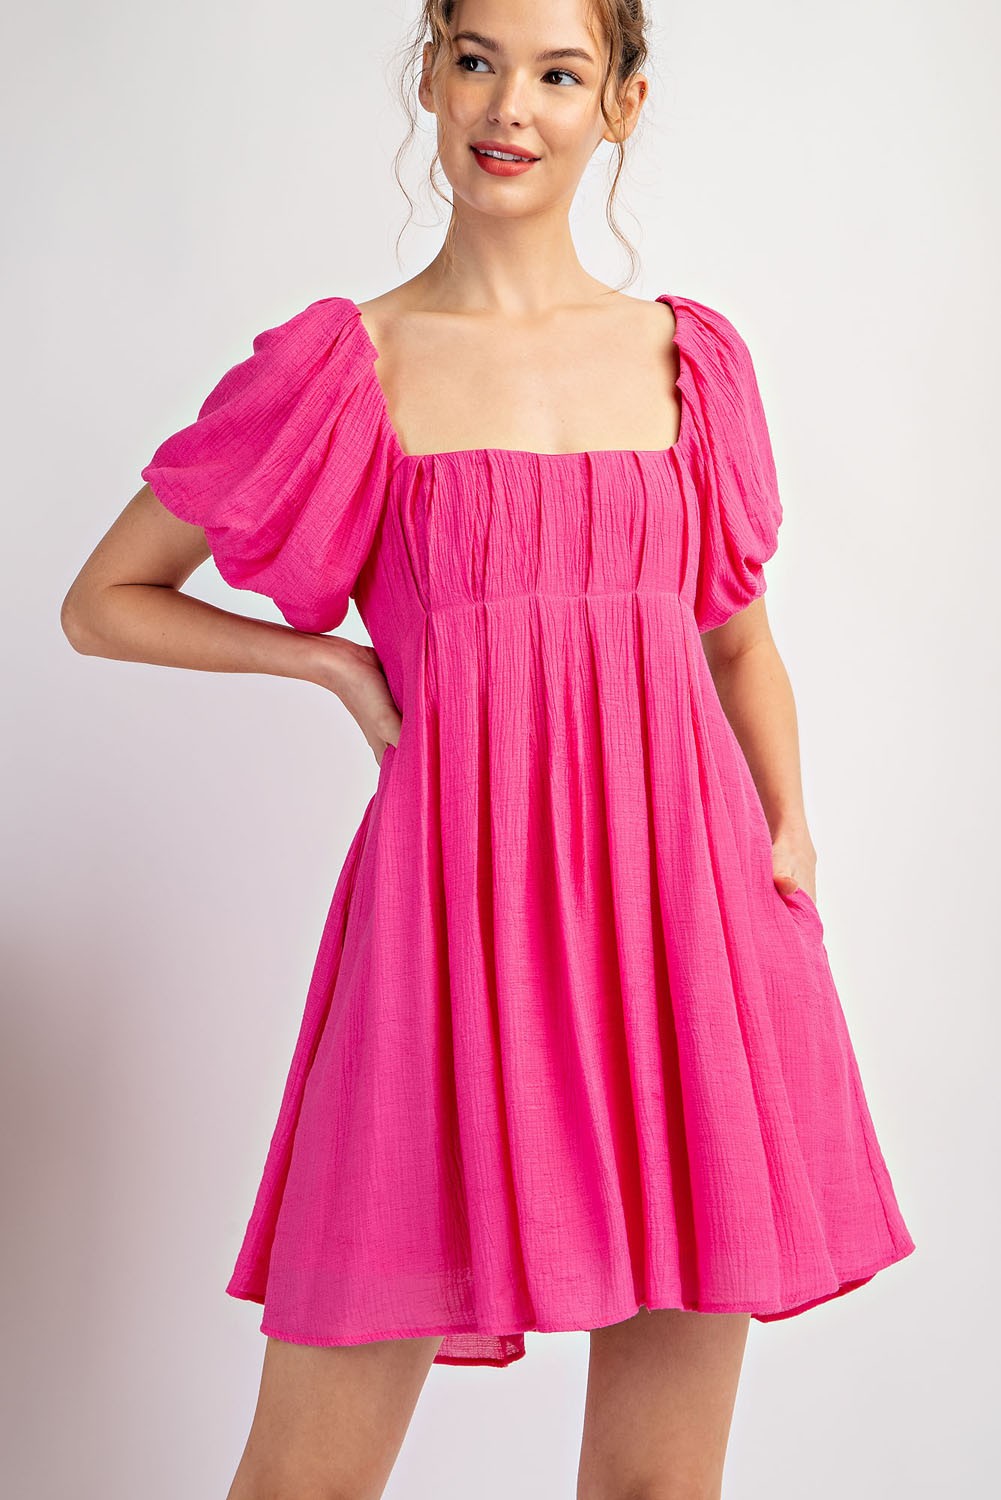 Darci Pink Dress - KC Outfitter